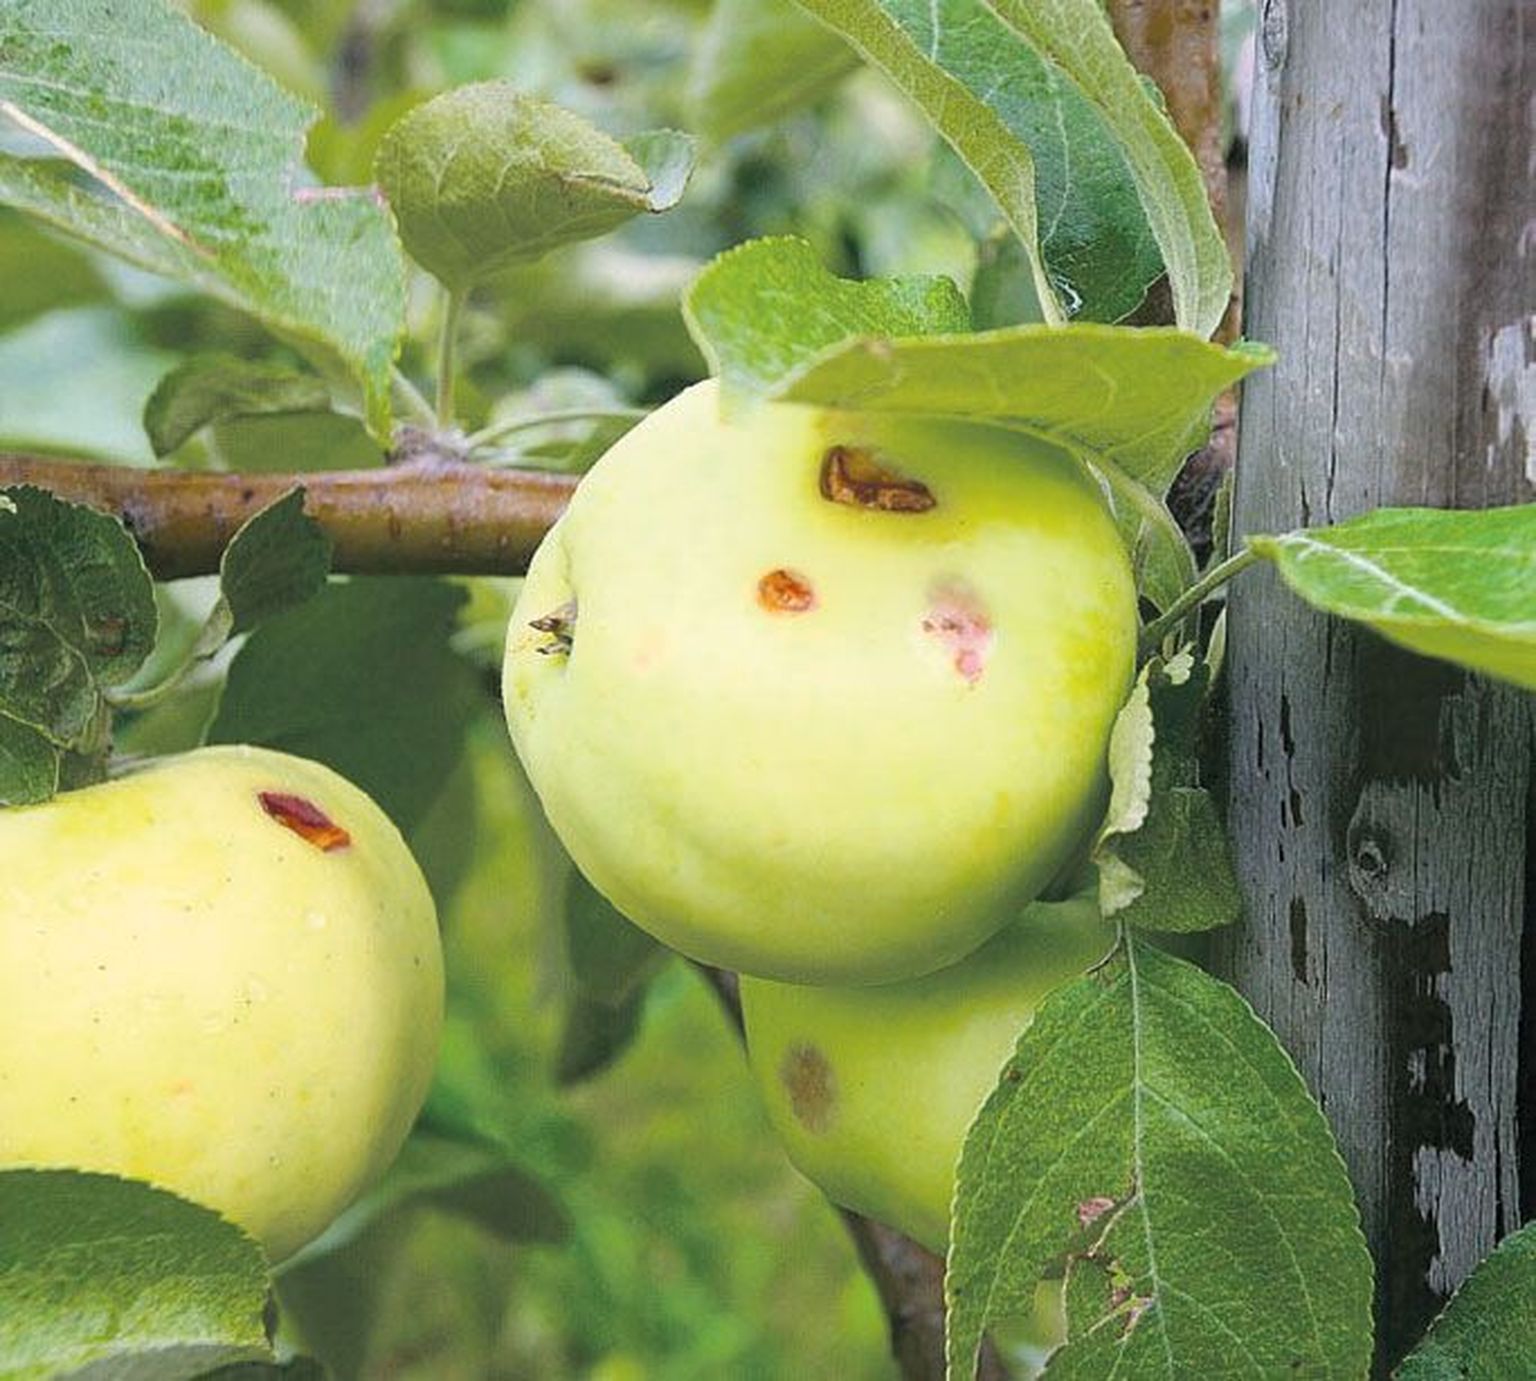 Kui supermarketid üldse aiapidajate õunu vastu võtavad, siis ainult väga kvaliteetseid.